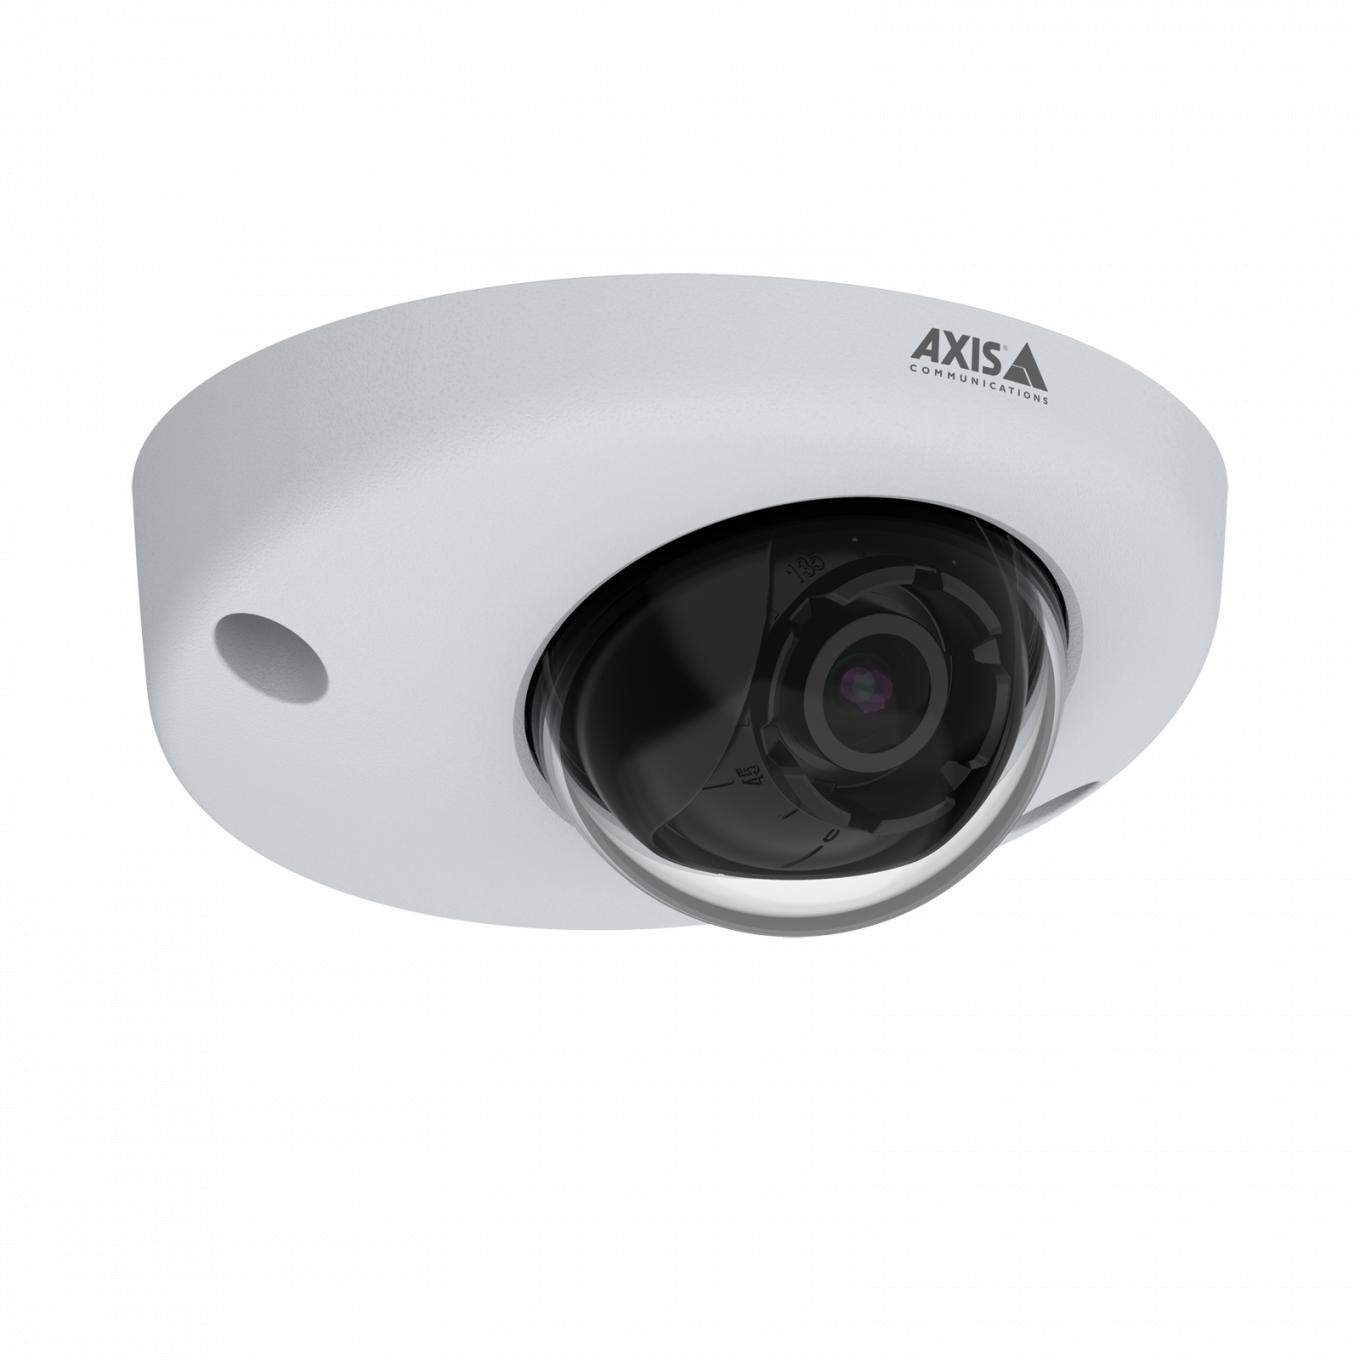 L’AXIS P3925-R est une caméra IP robuste et résistante au vandalisme avec Lightfinder. Vue de son angle droit. 